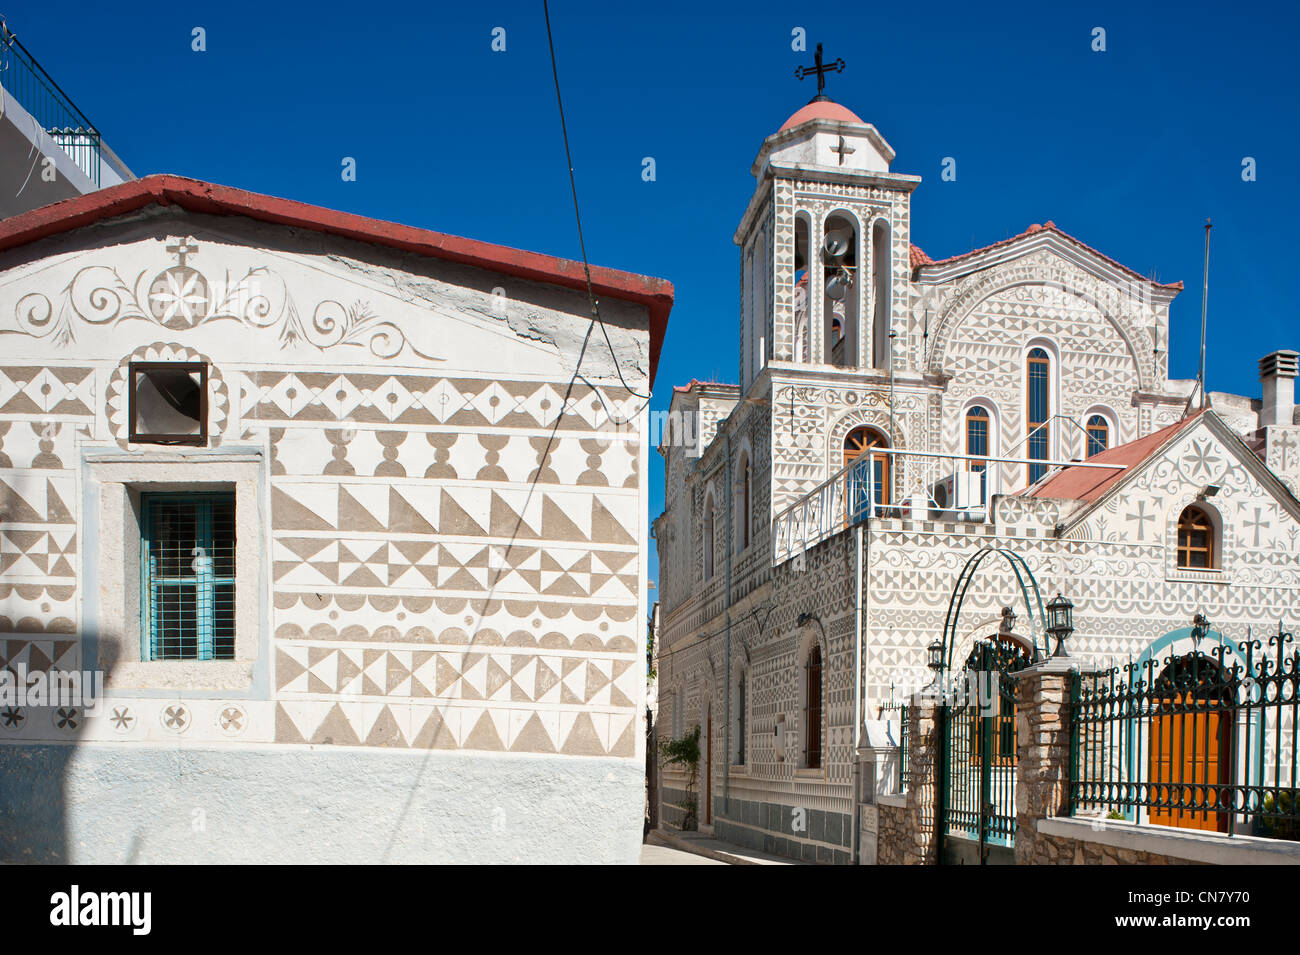 La Grèce, l'île de Chios, le village médiéval de Pyrghi fait partie d'Mastikochoria (villages producteurs de mastic), maisons décorées Banque D'Images